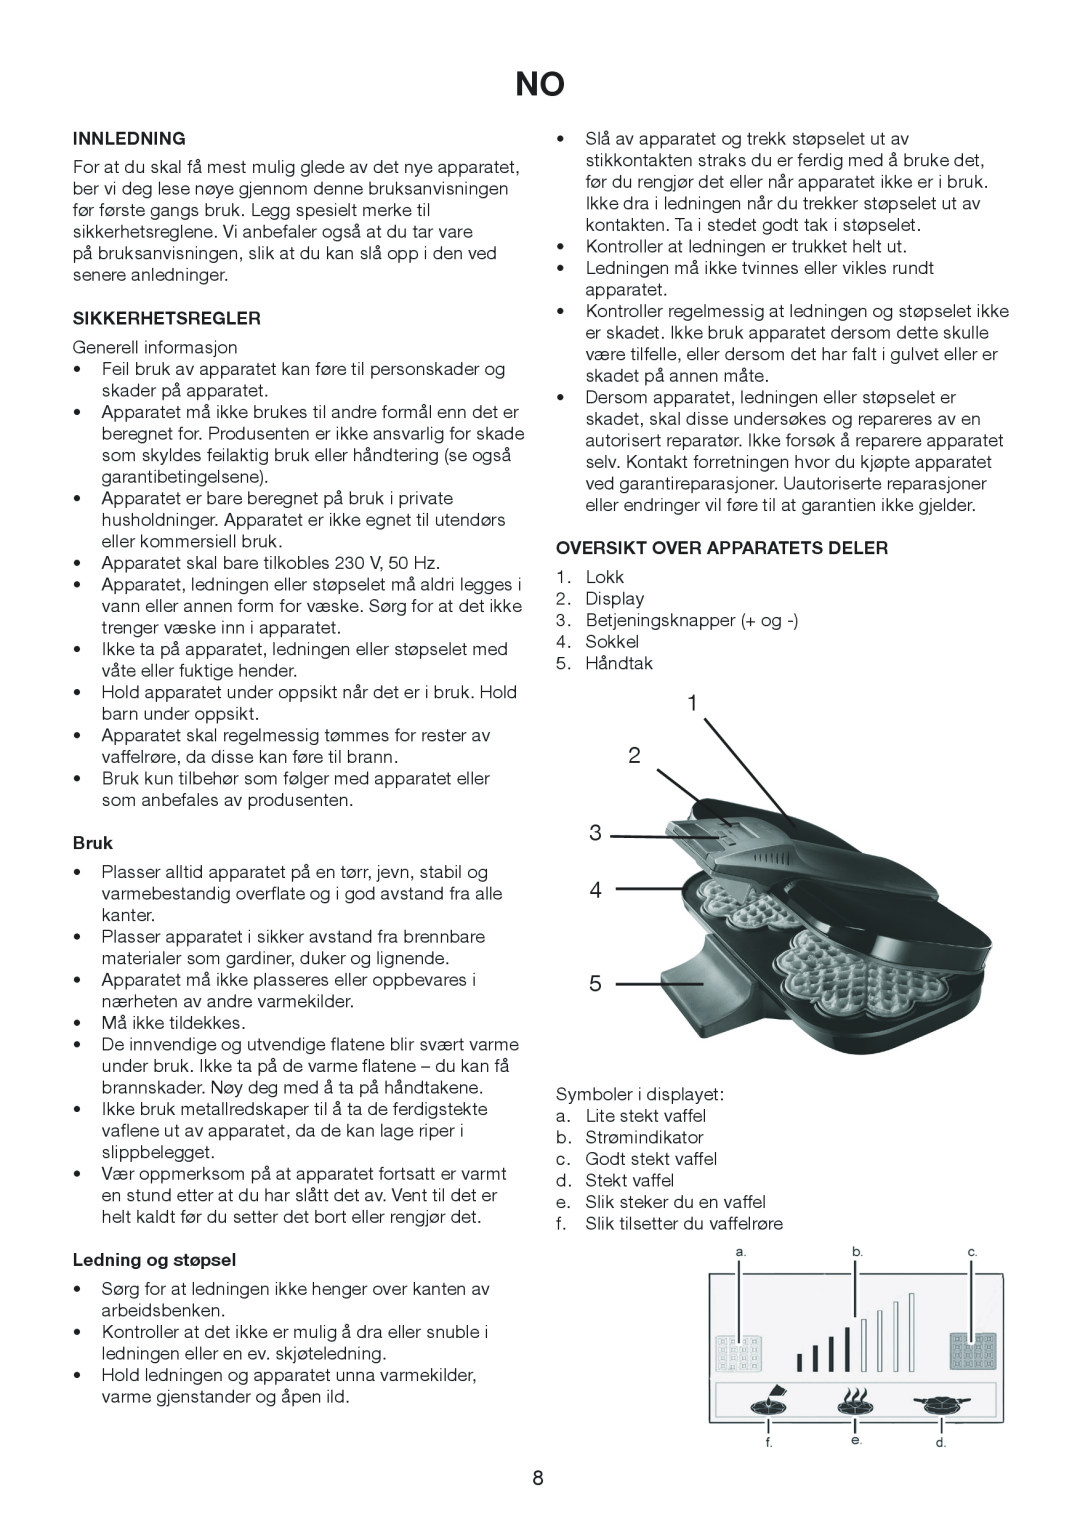 Exido 243-054 manual Innledning, Sikkerhetsregler, Bruk, Ledning og støpsel, Oversikt Over Apparatets Deler 